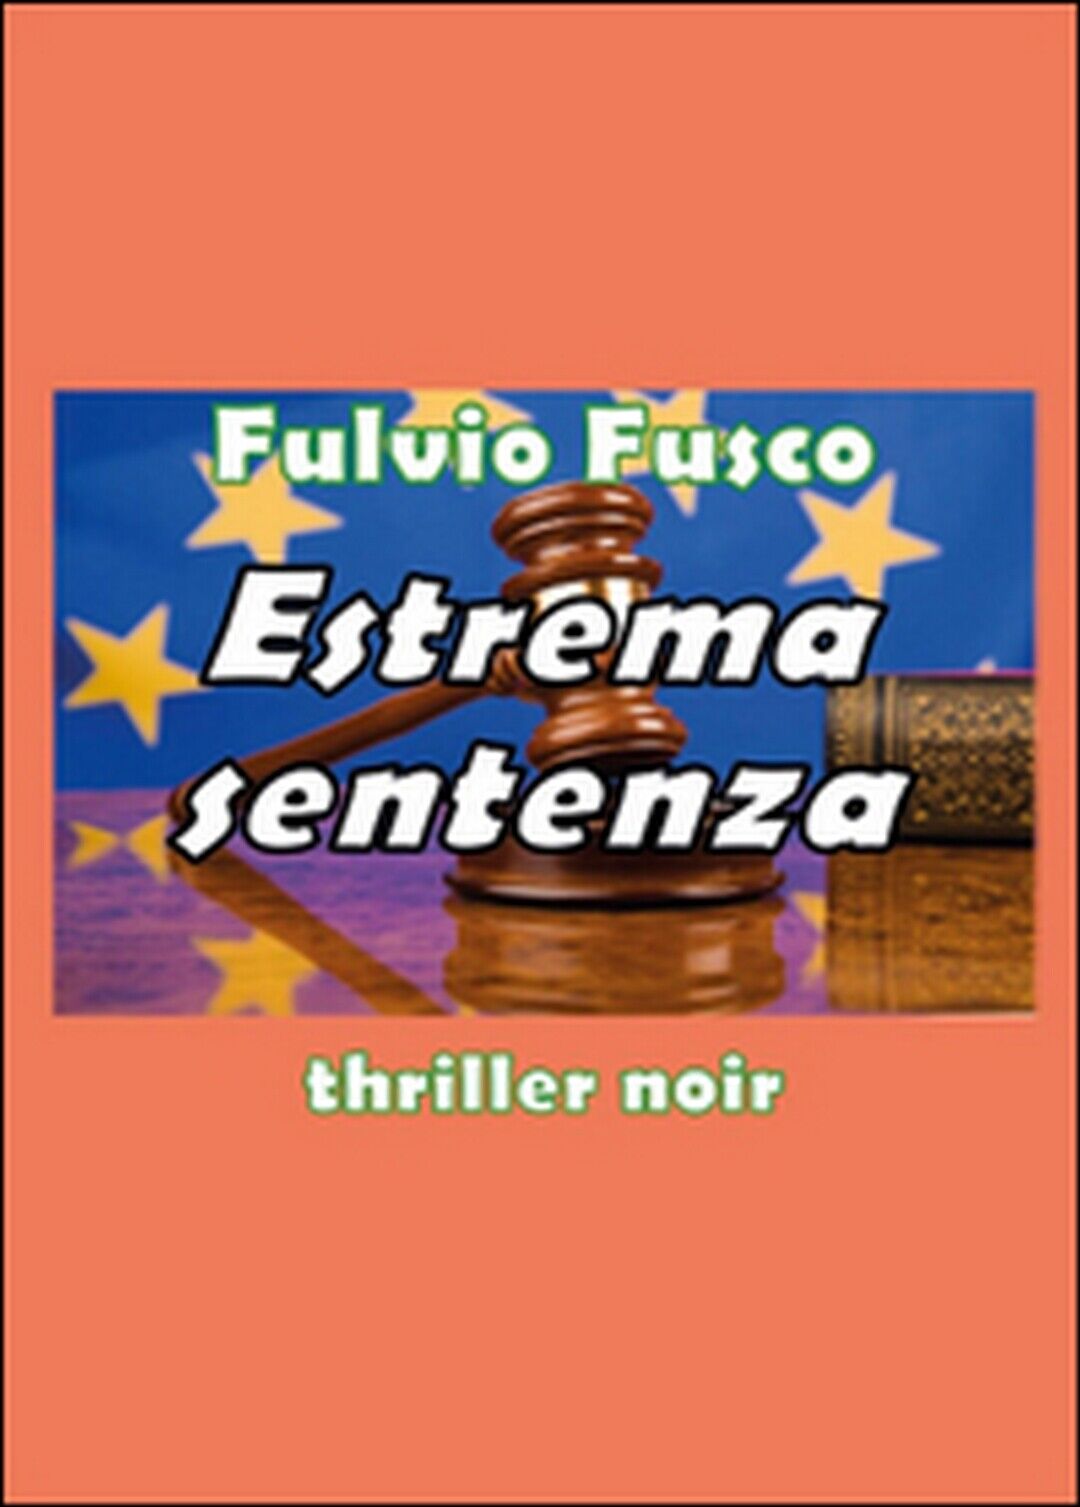 Estrema sentenza  di Fulvio Fusco,  2015,  Youcanprint